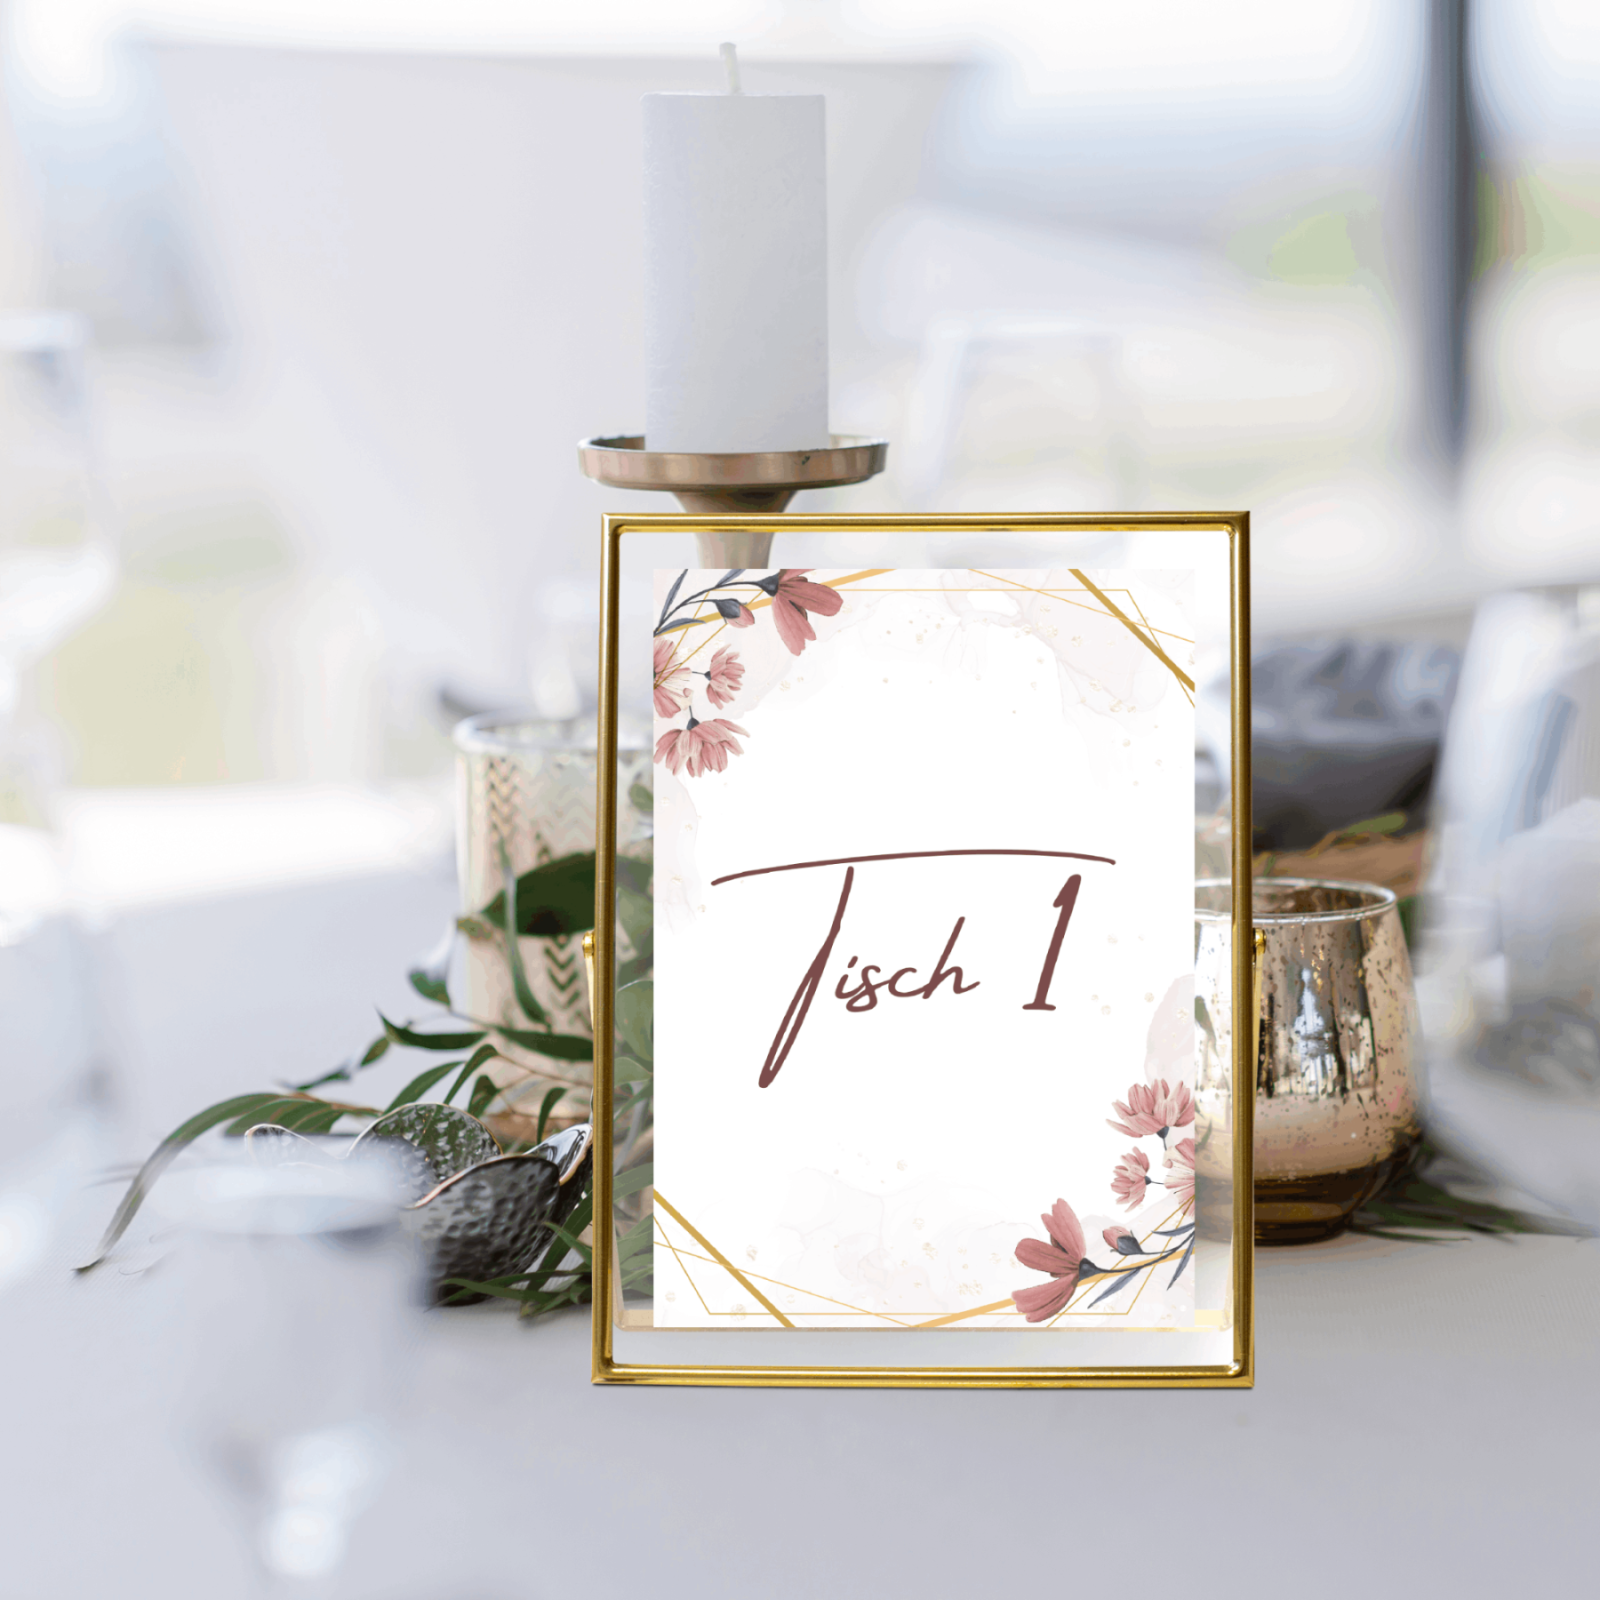 Tischnummern für die Hochzeit selber drucken - Digitale Vorlage zum Ausdrucken für die